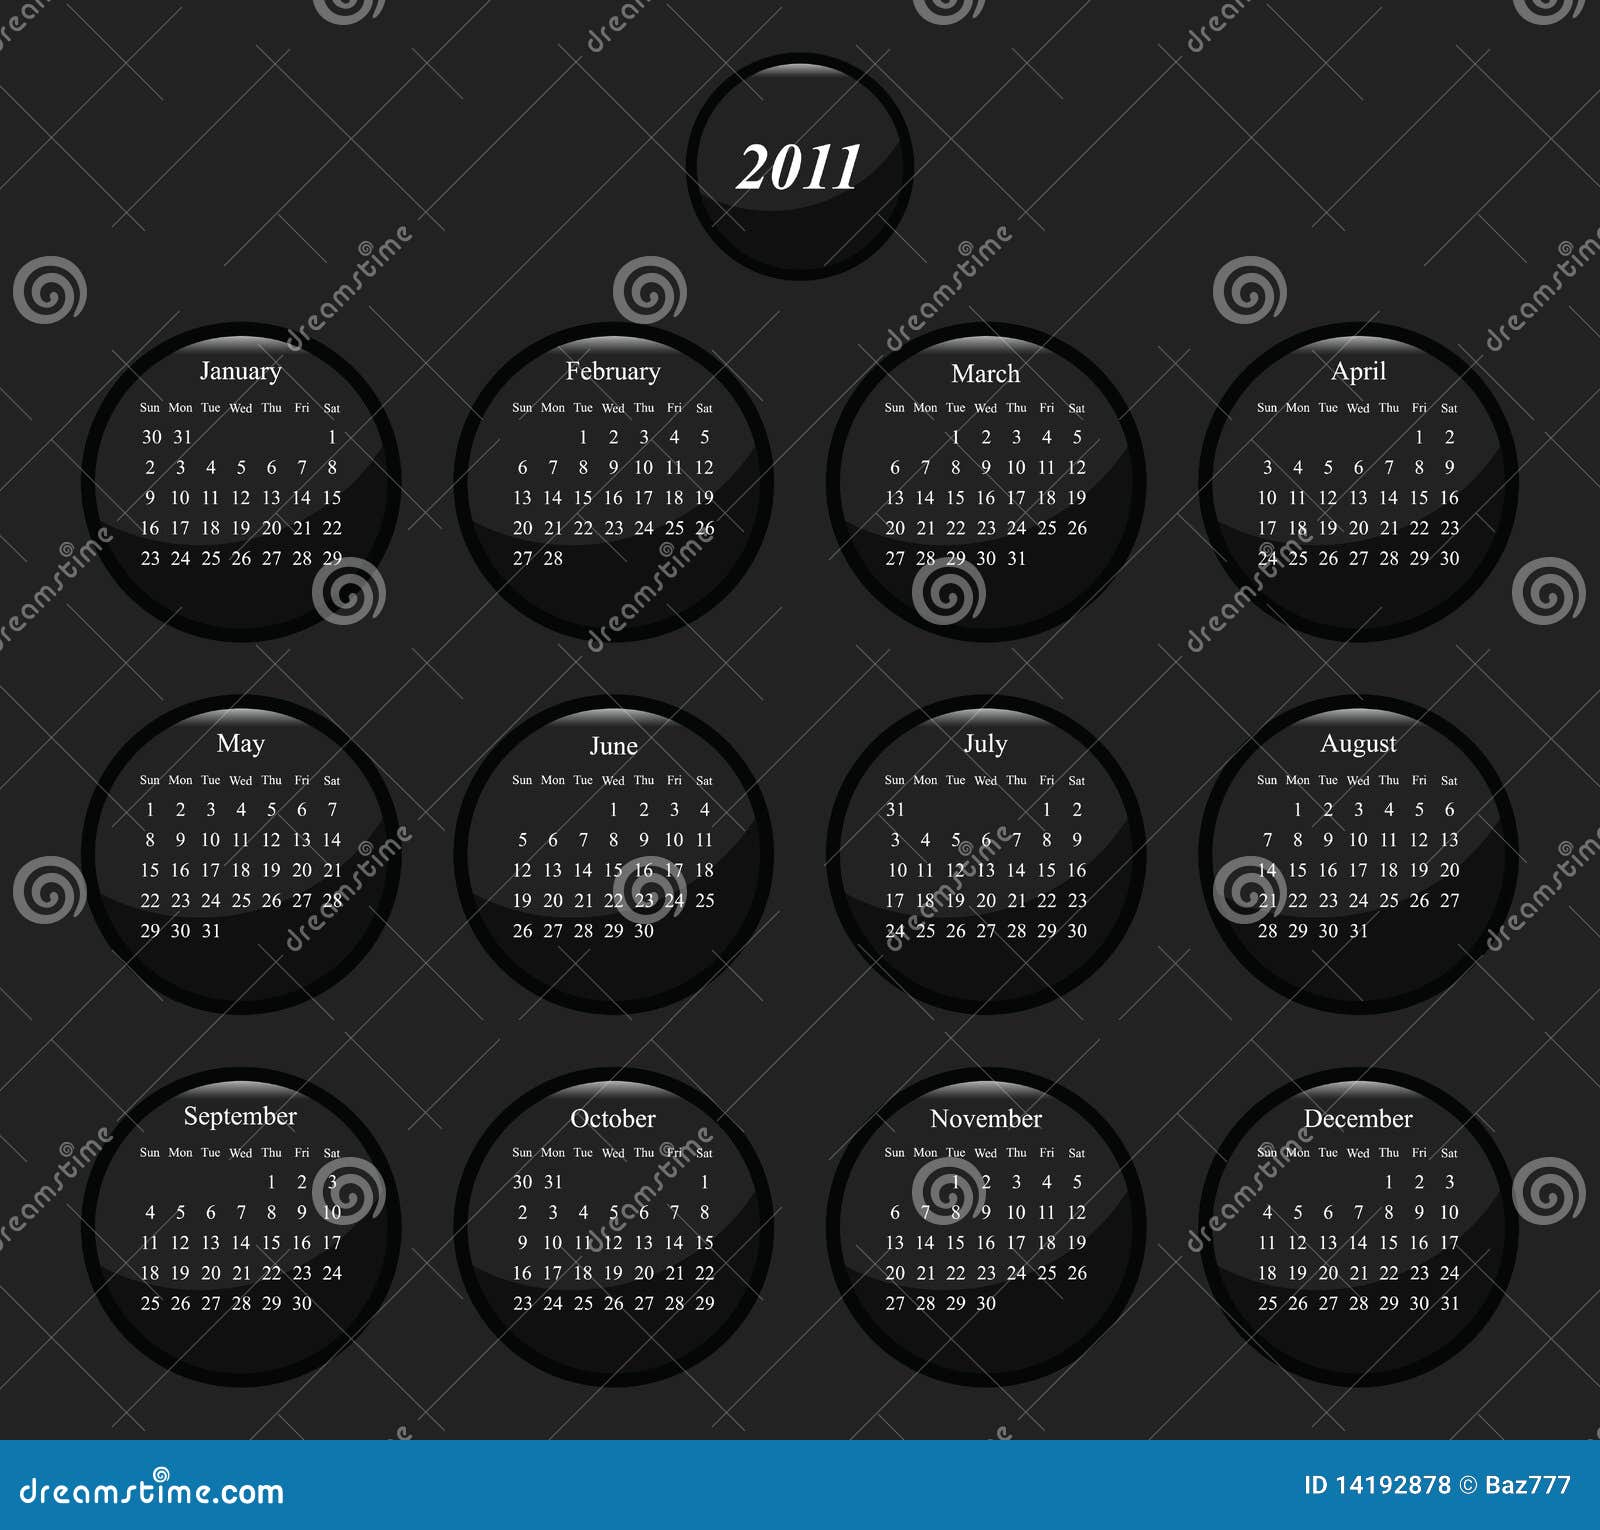 Monochrome black and white icon 2011 calendar